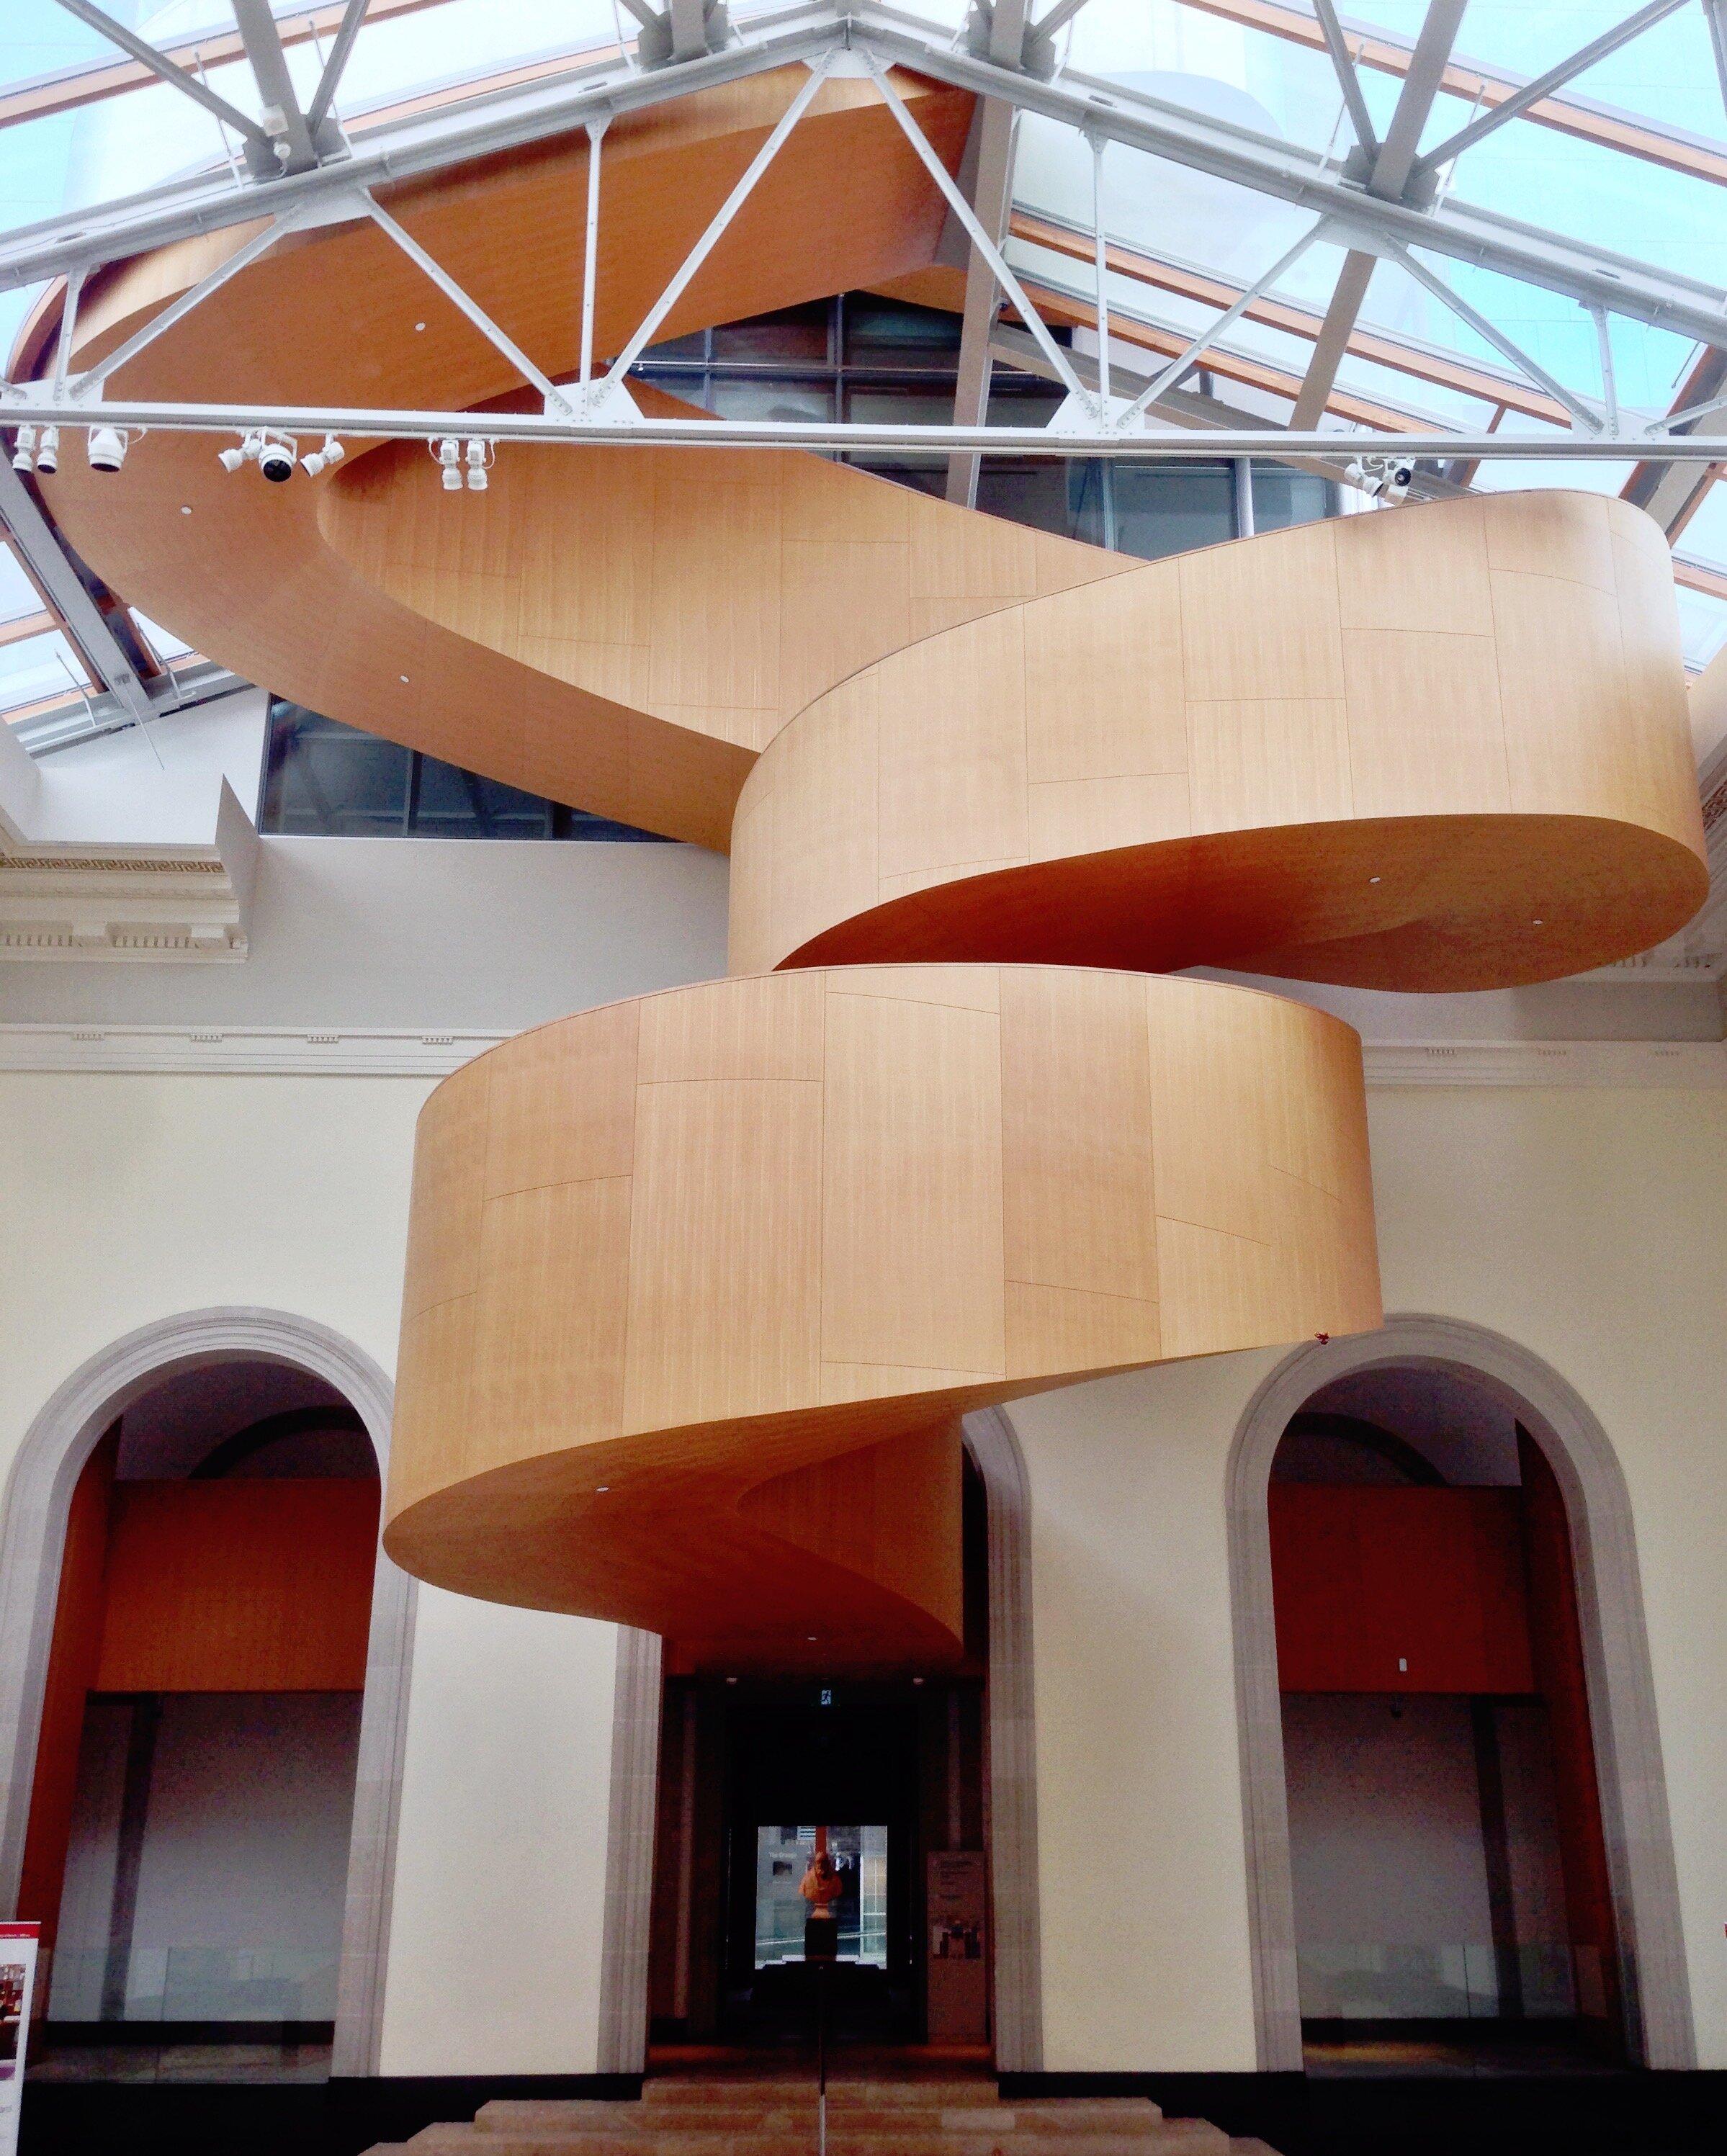 Art Gallery of Ontario (AGO) Spiral Staircase - Toronto, Ontario, Canada